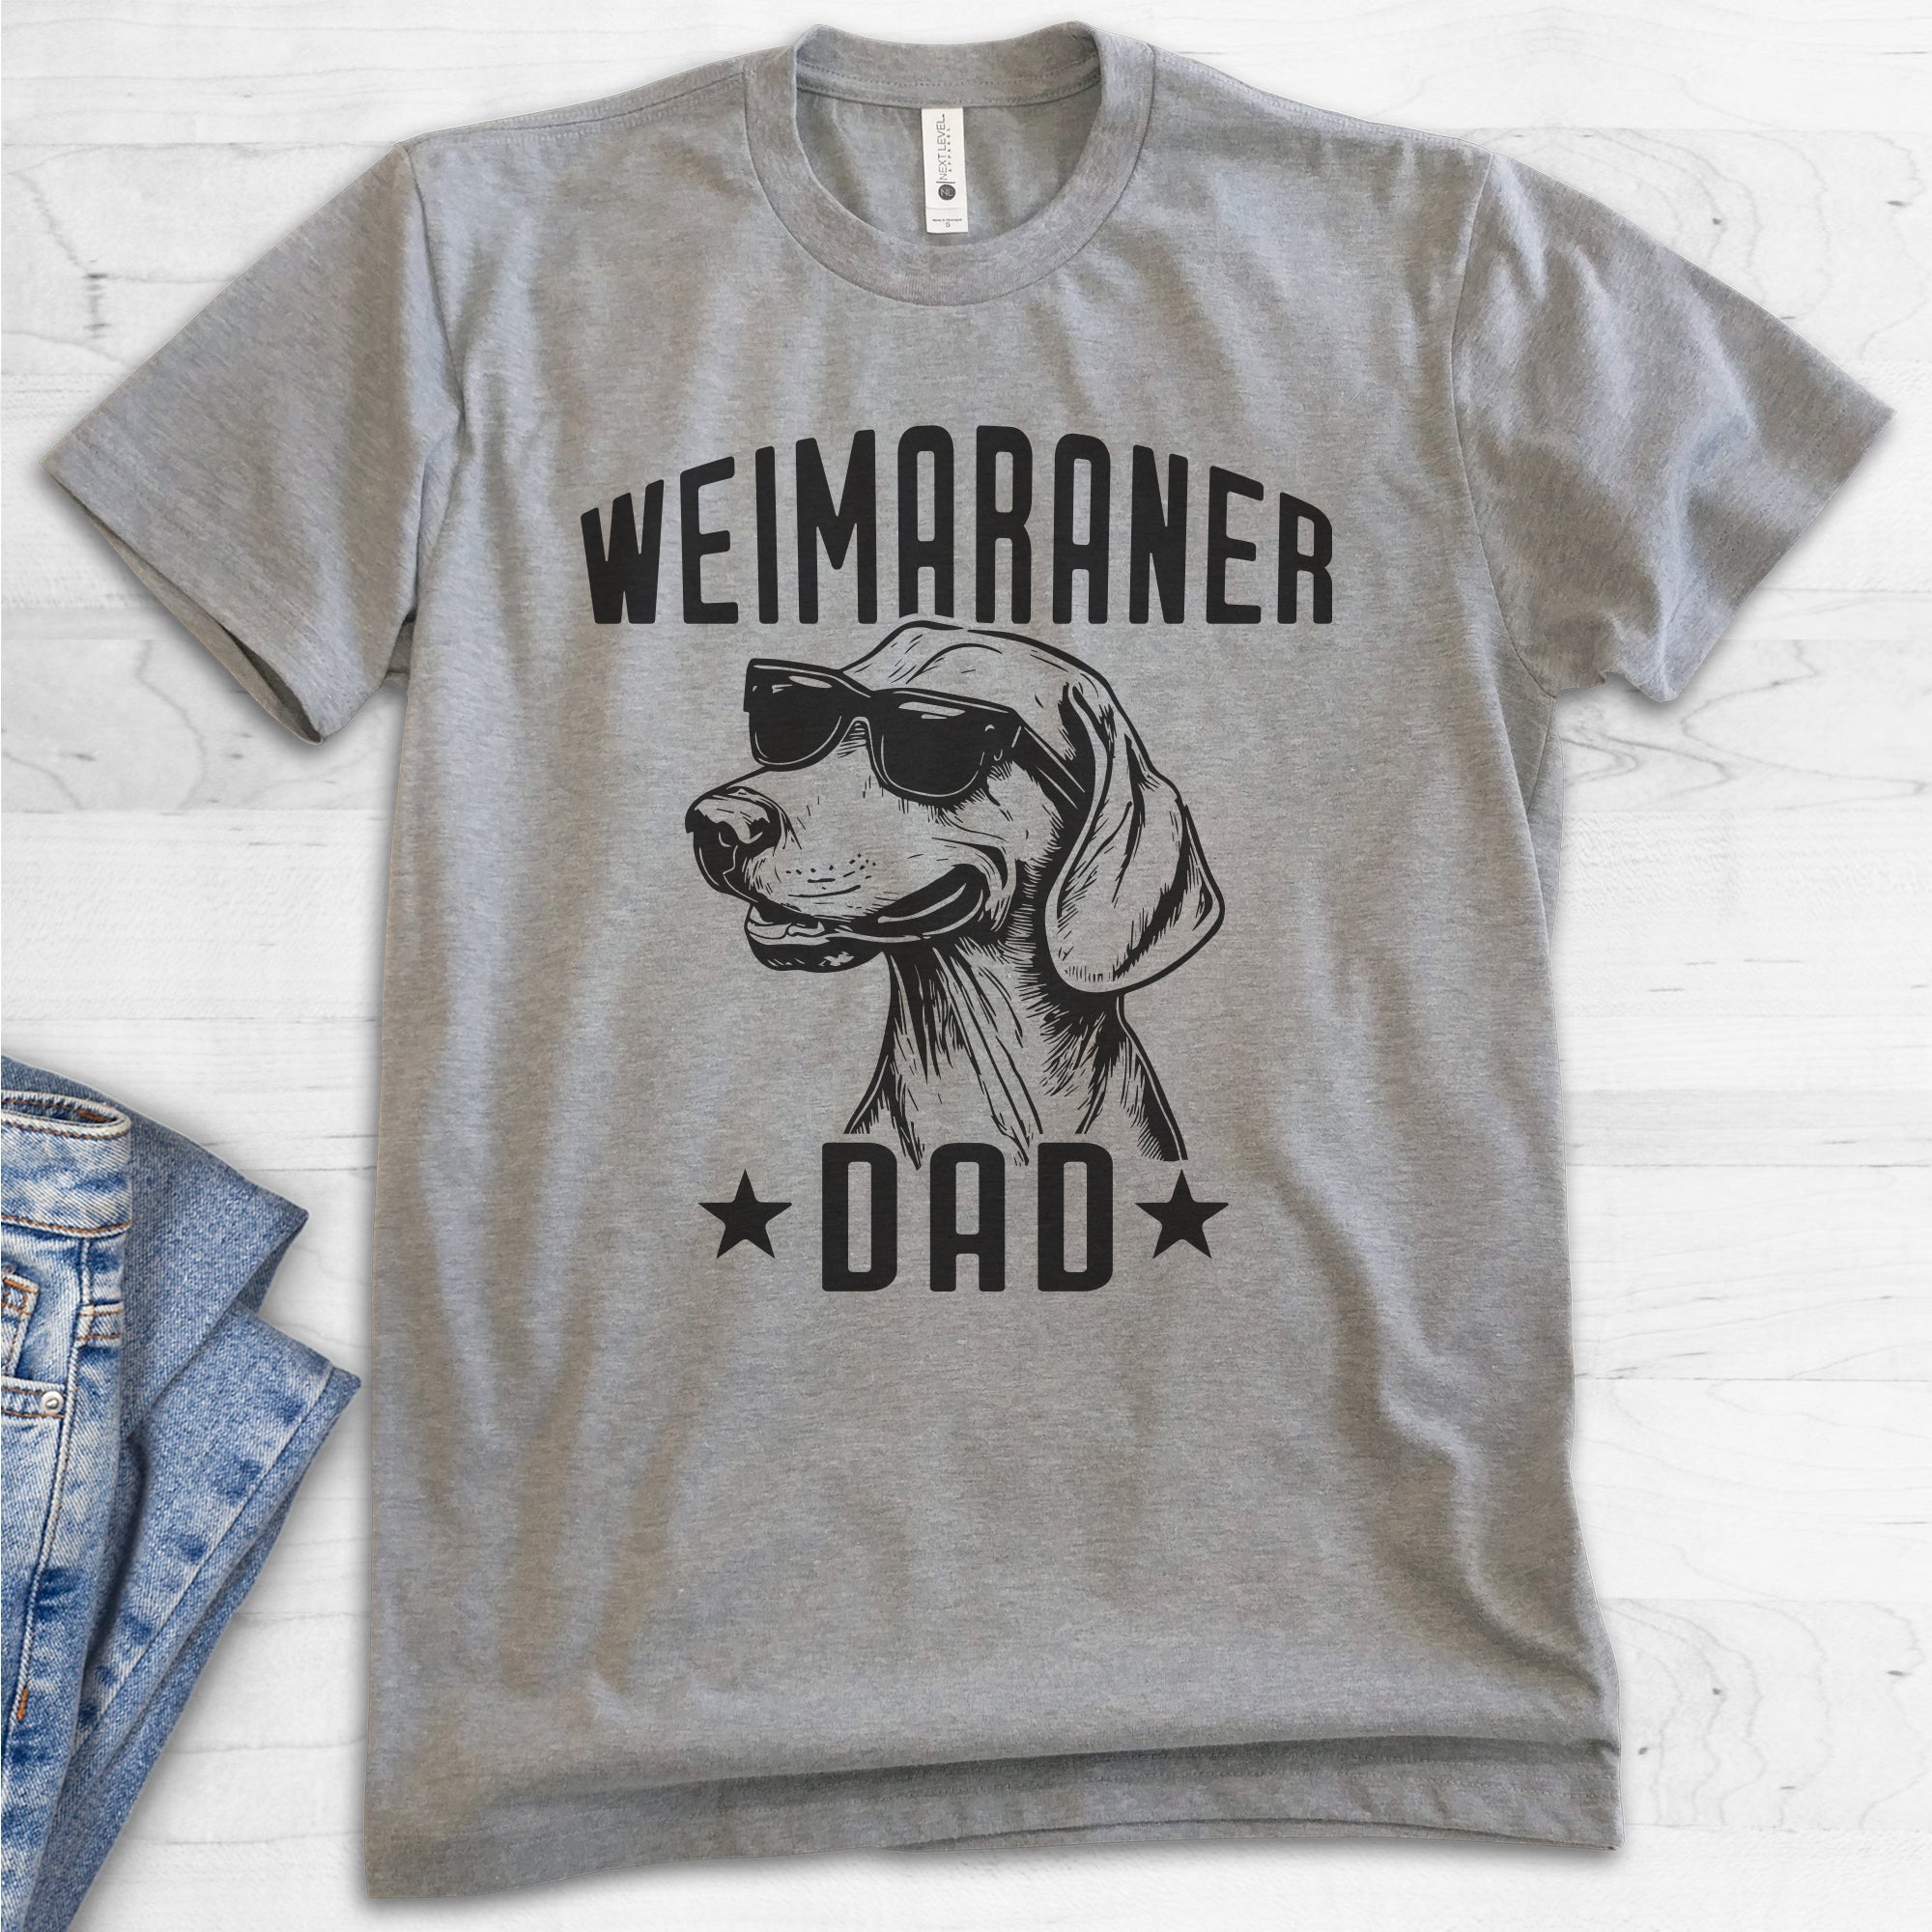 Weimaraner Dad T-shirt